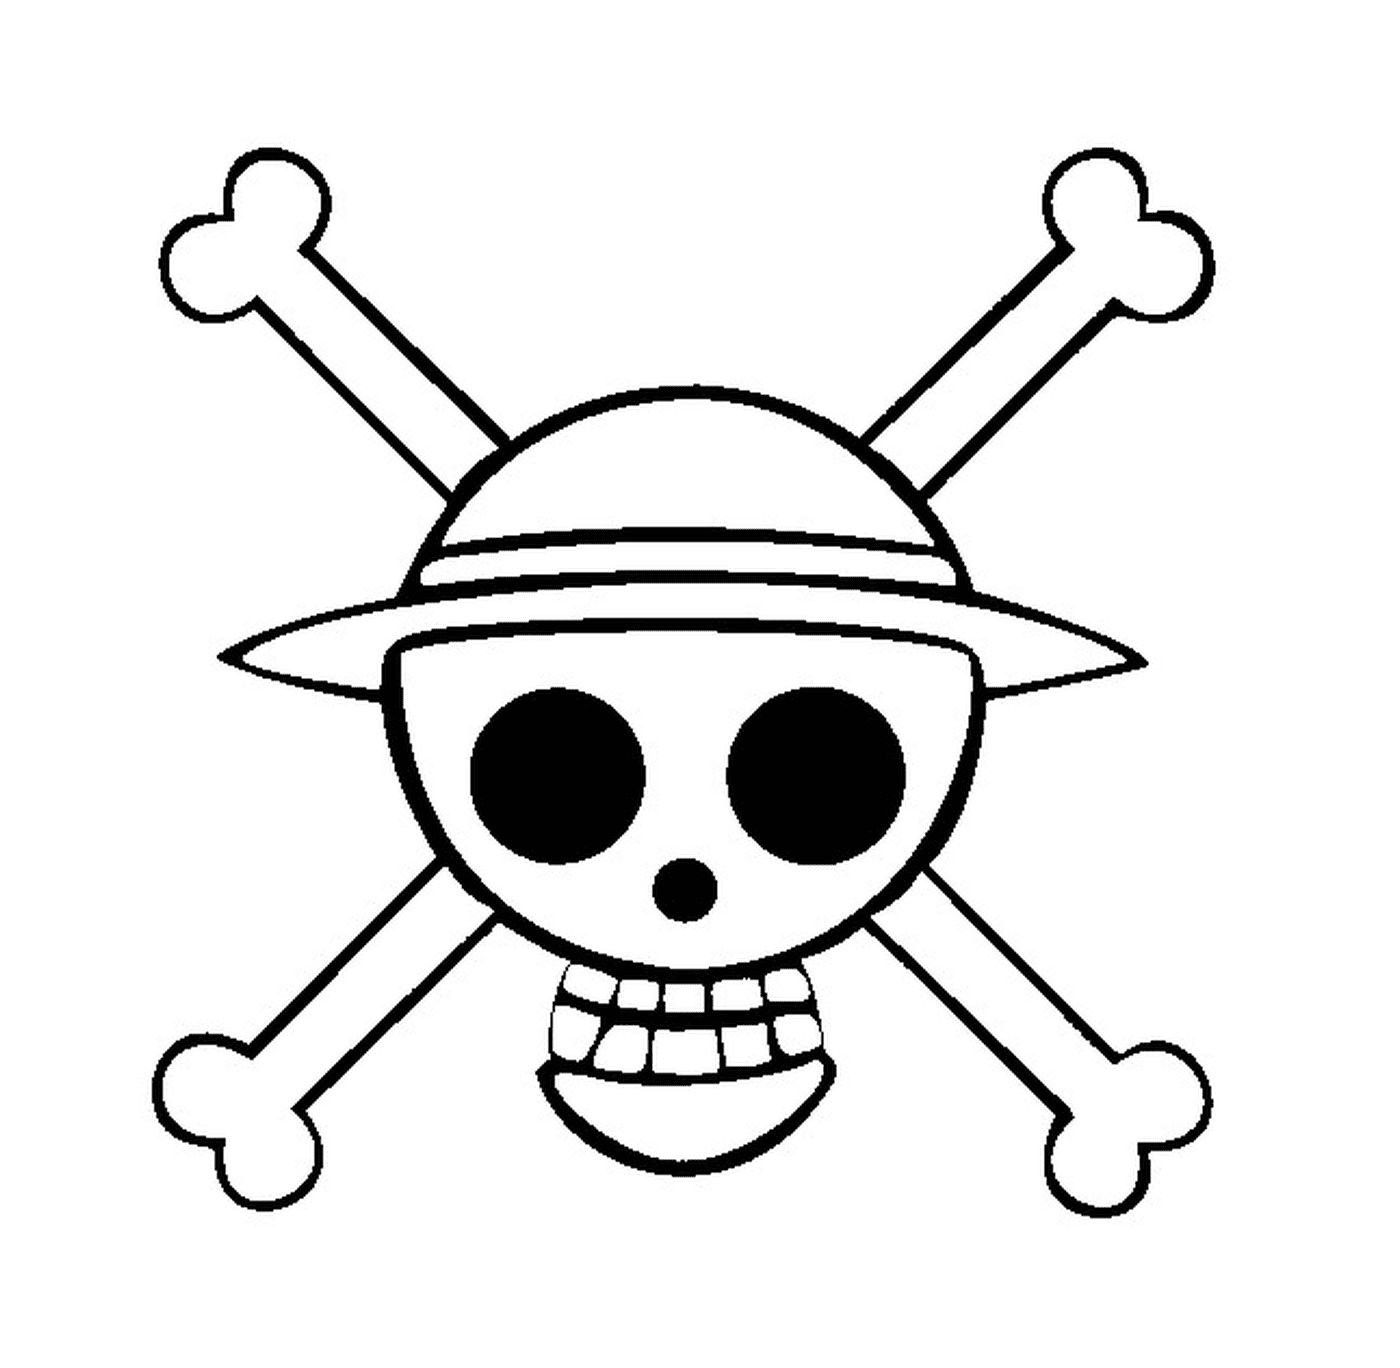  Logo One Piece, simbolo del pirata 